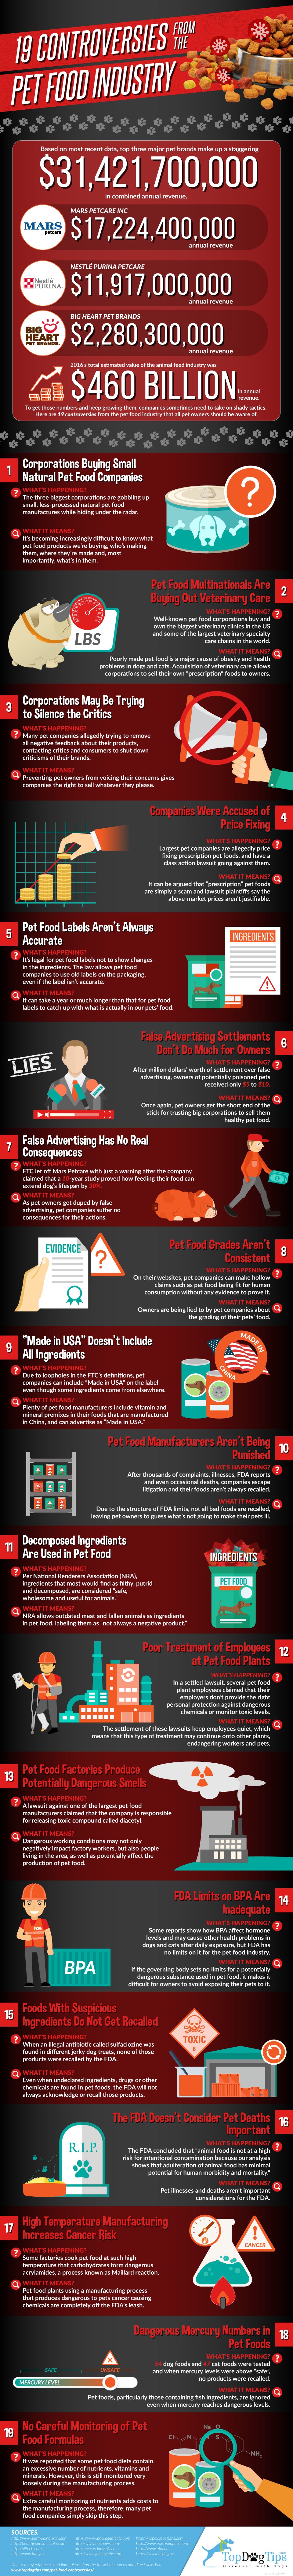 19 споров вокруг пищевой промышленности [инфографика]